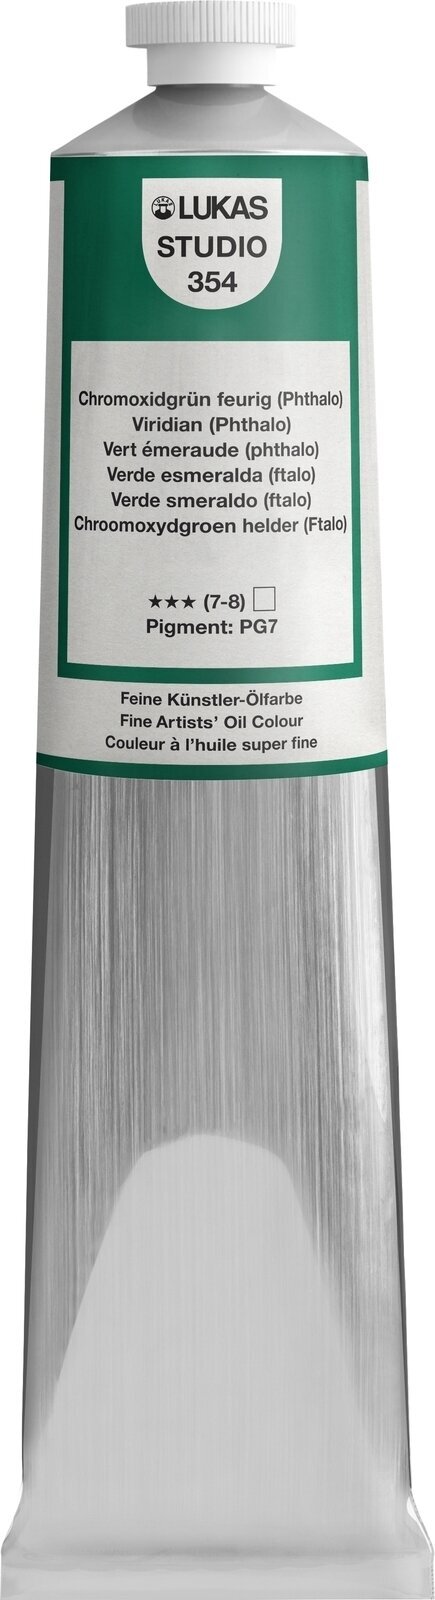 Oliefarve Lukas Studio Oil Paint Aluminium Tube Oliemaling Viridian (Phthalo) 200 ml 1 stk.